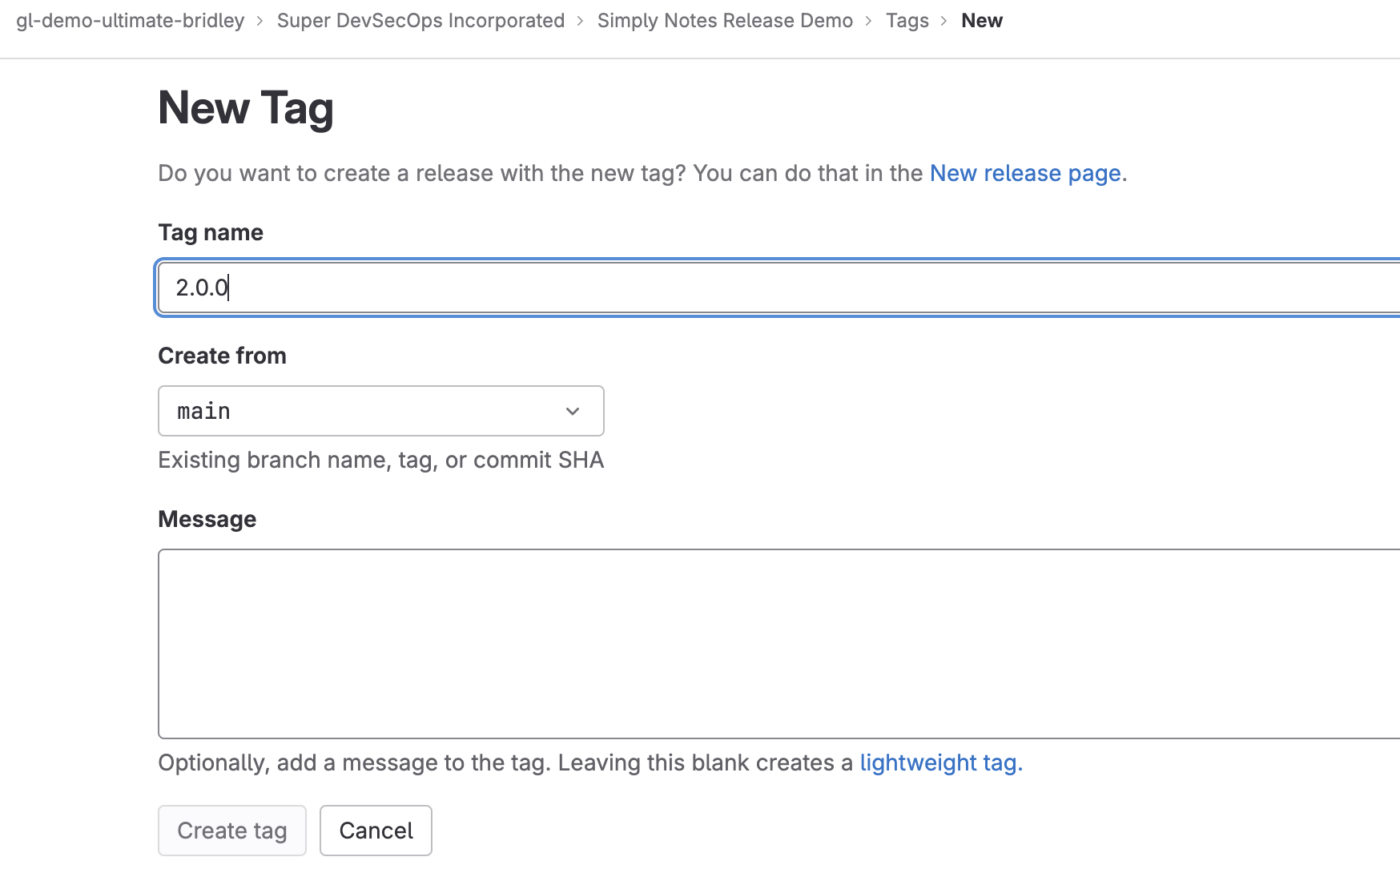 GitLab New Tag settings